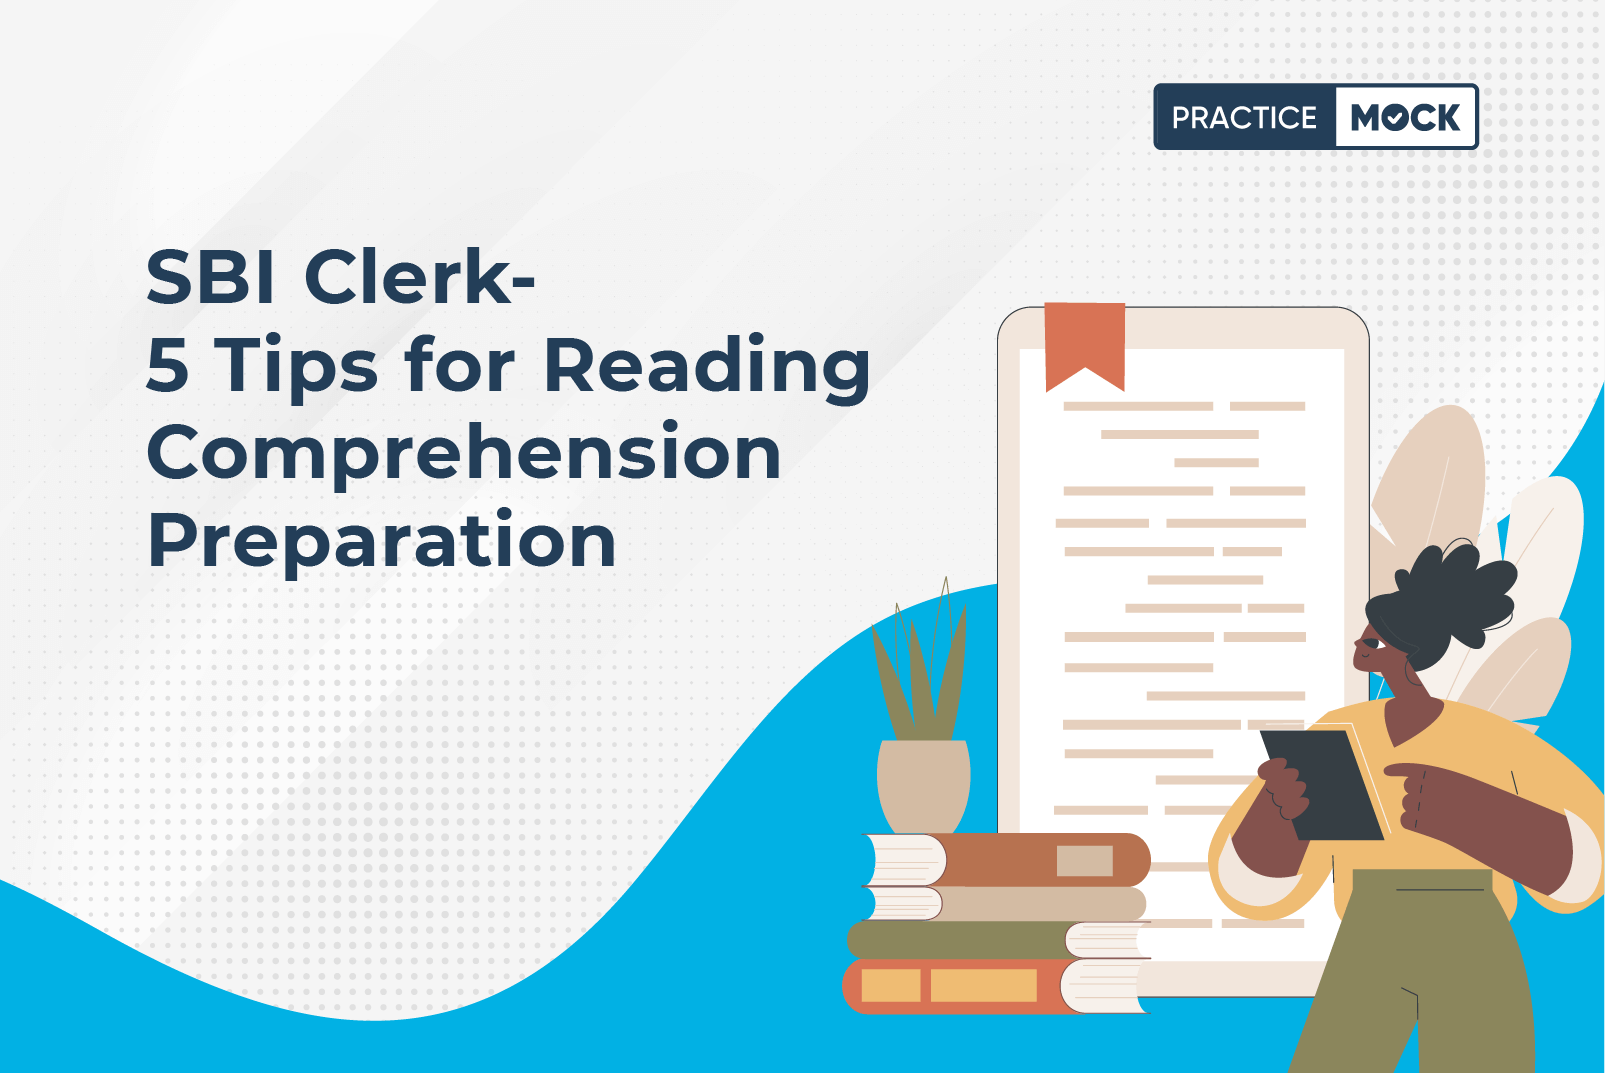 SBI Clerk- 5 Tips for Reading Comprehension Preparation (1)